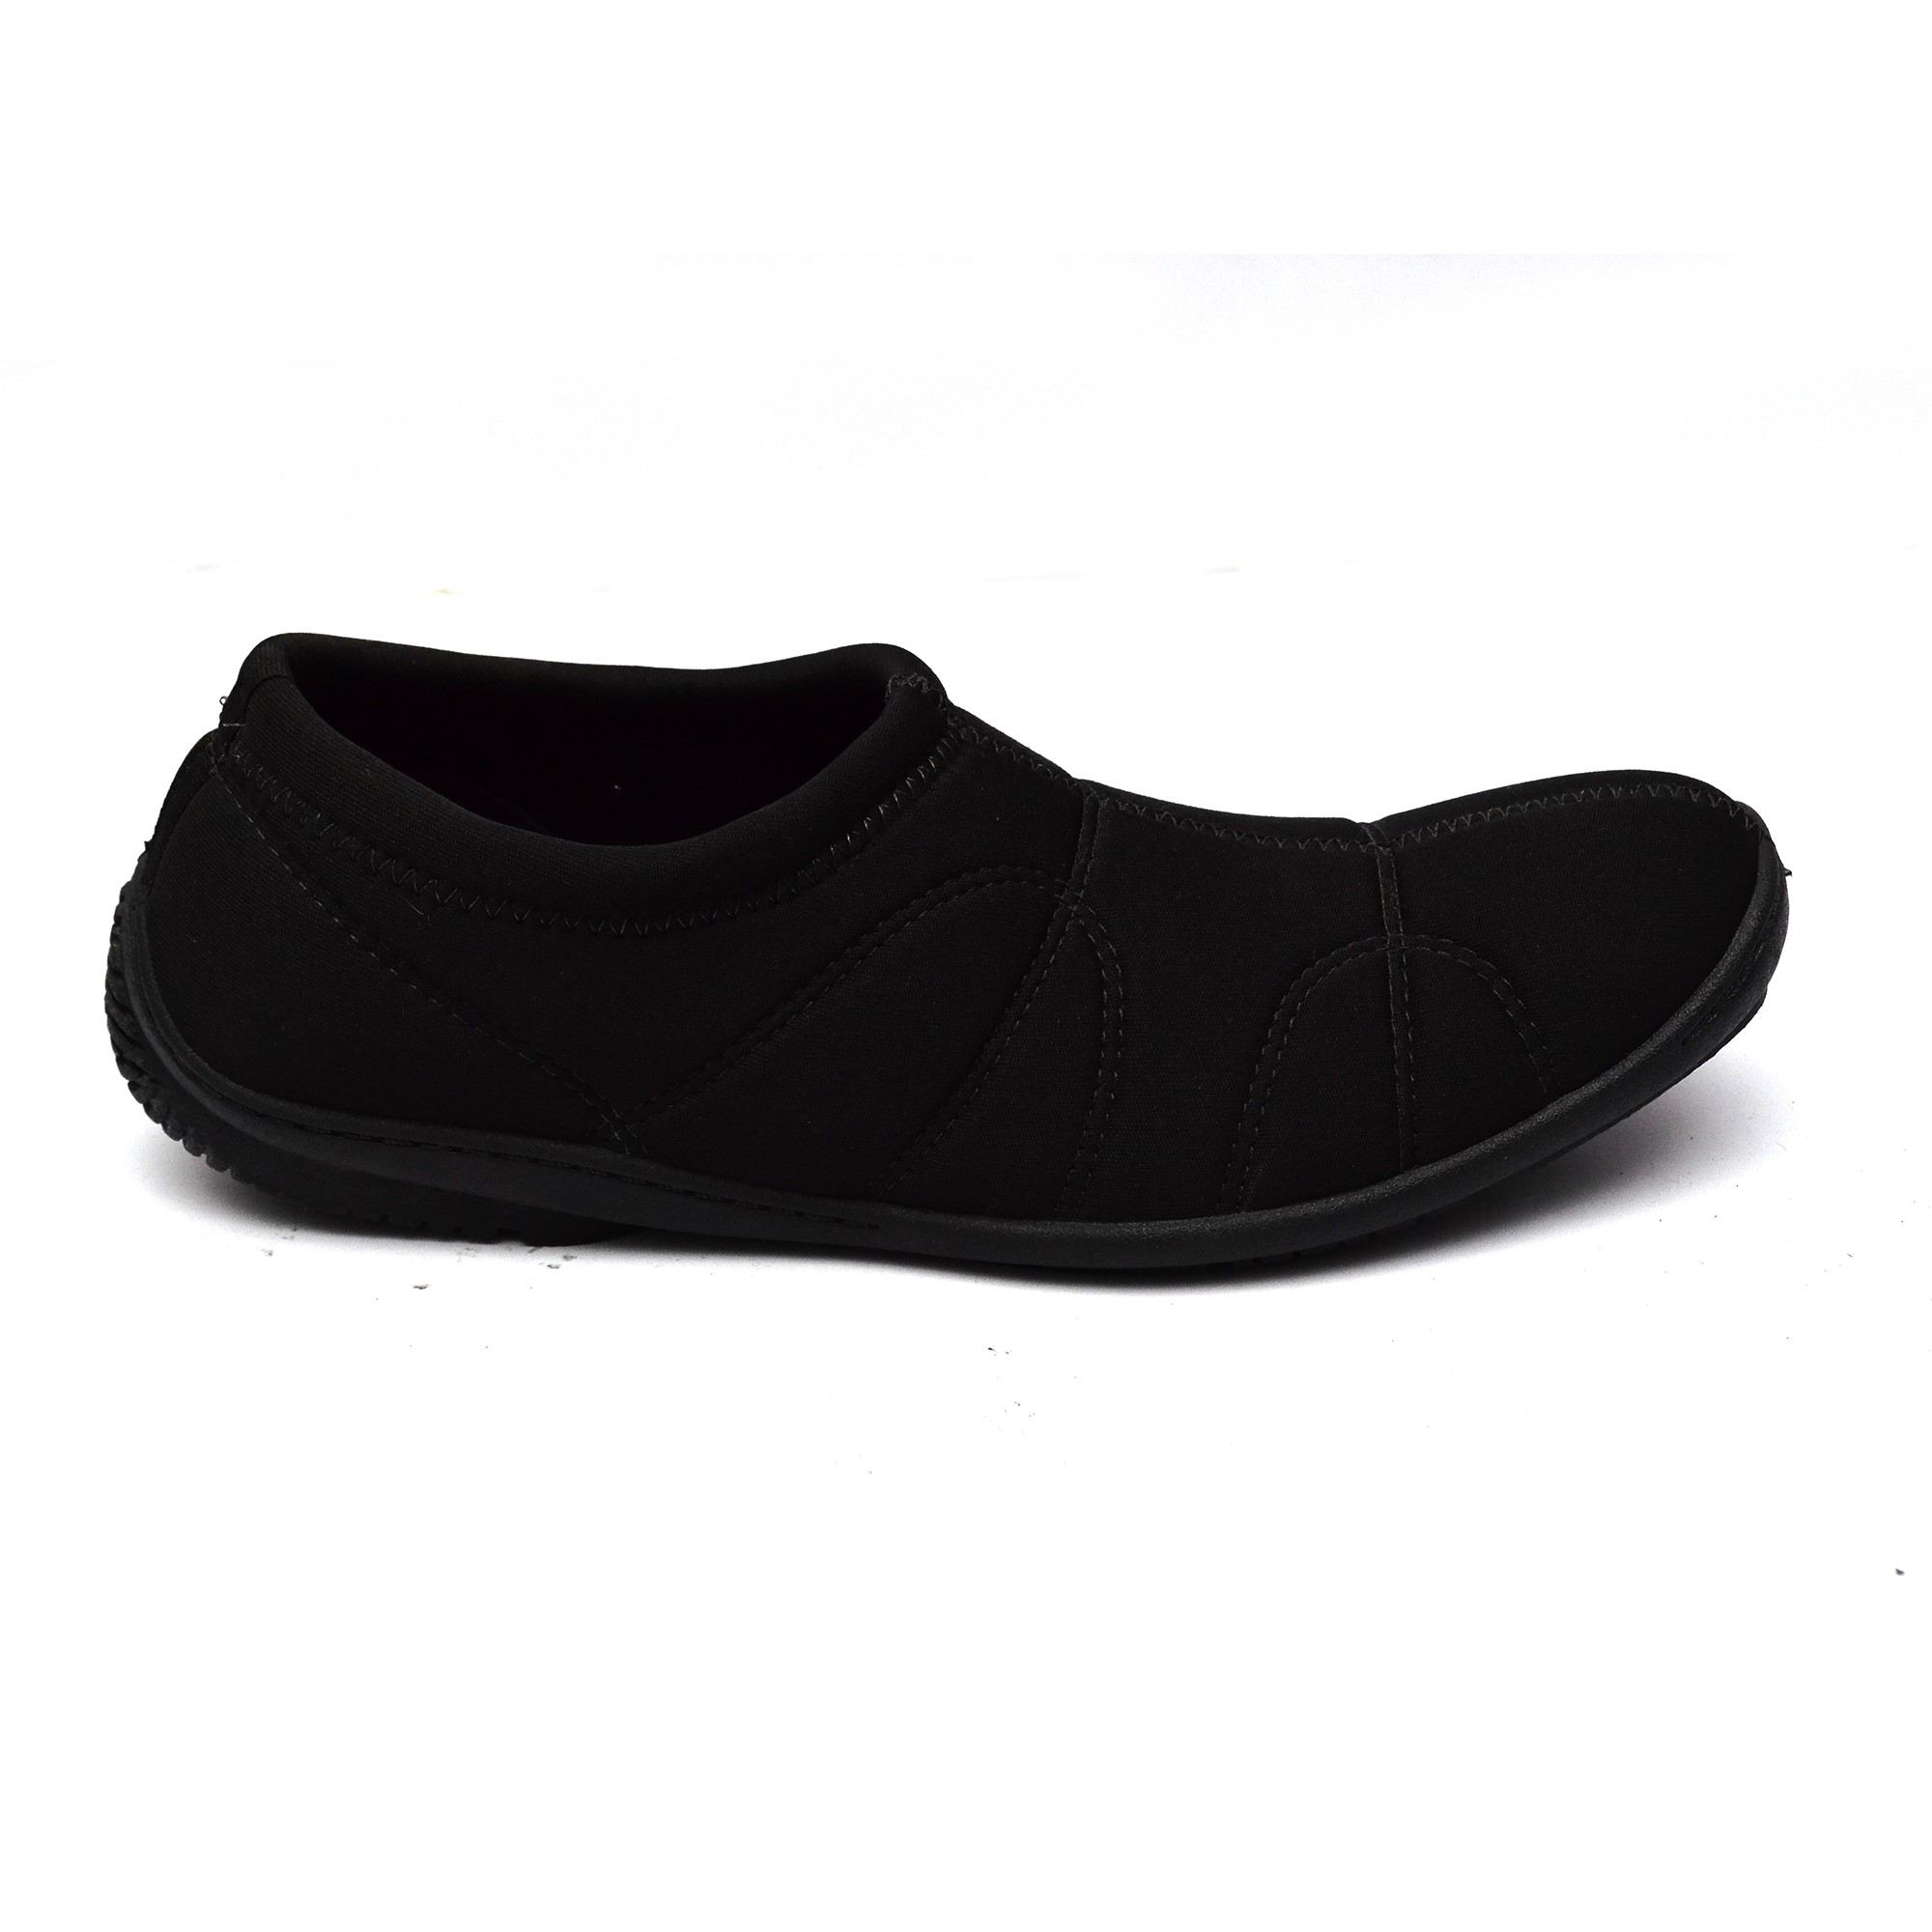 bata mens casual shoes black